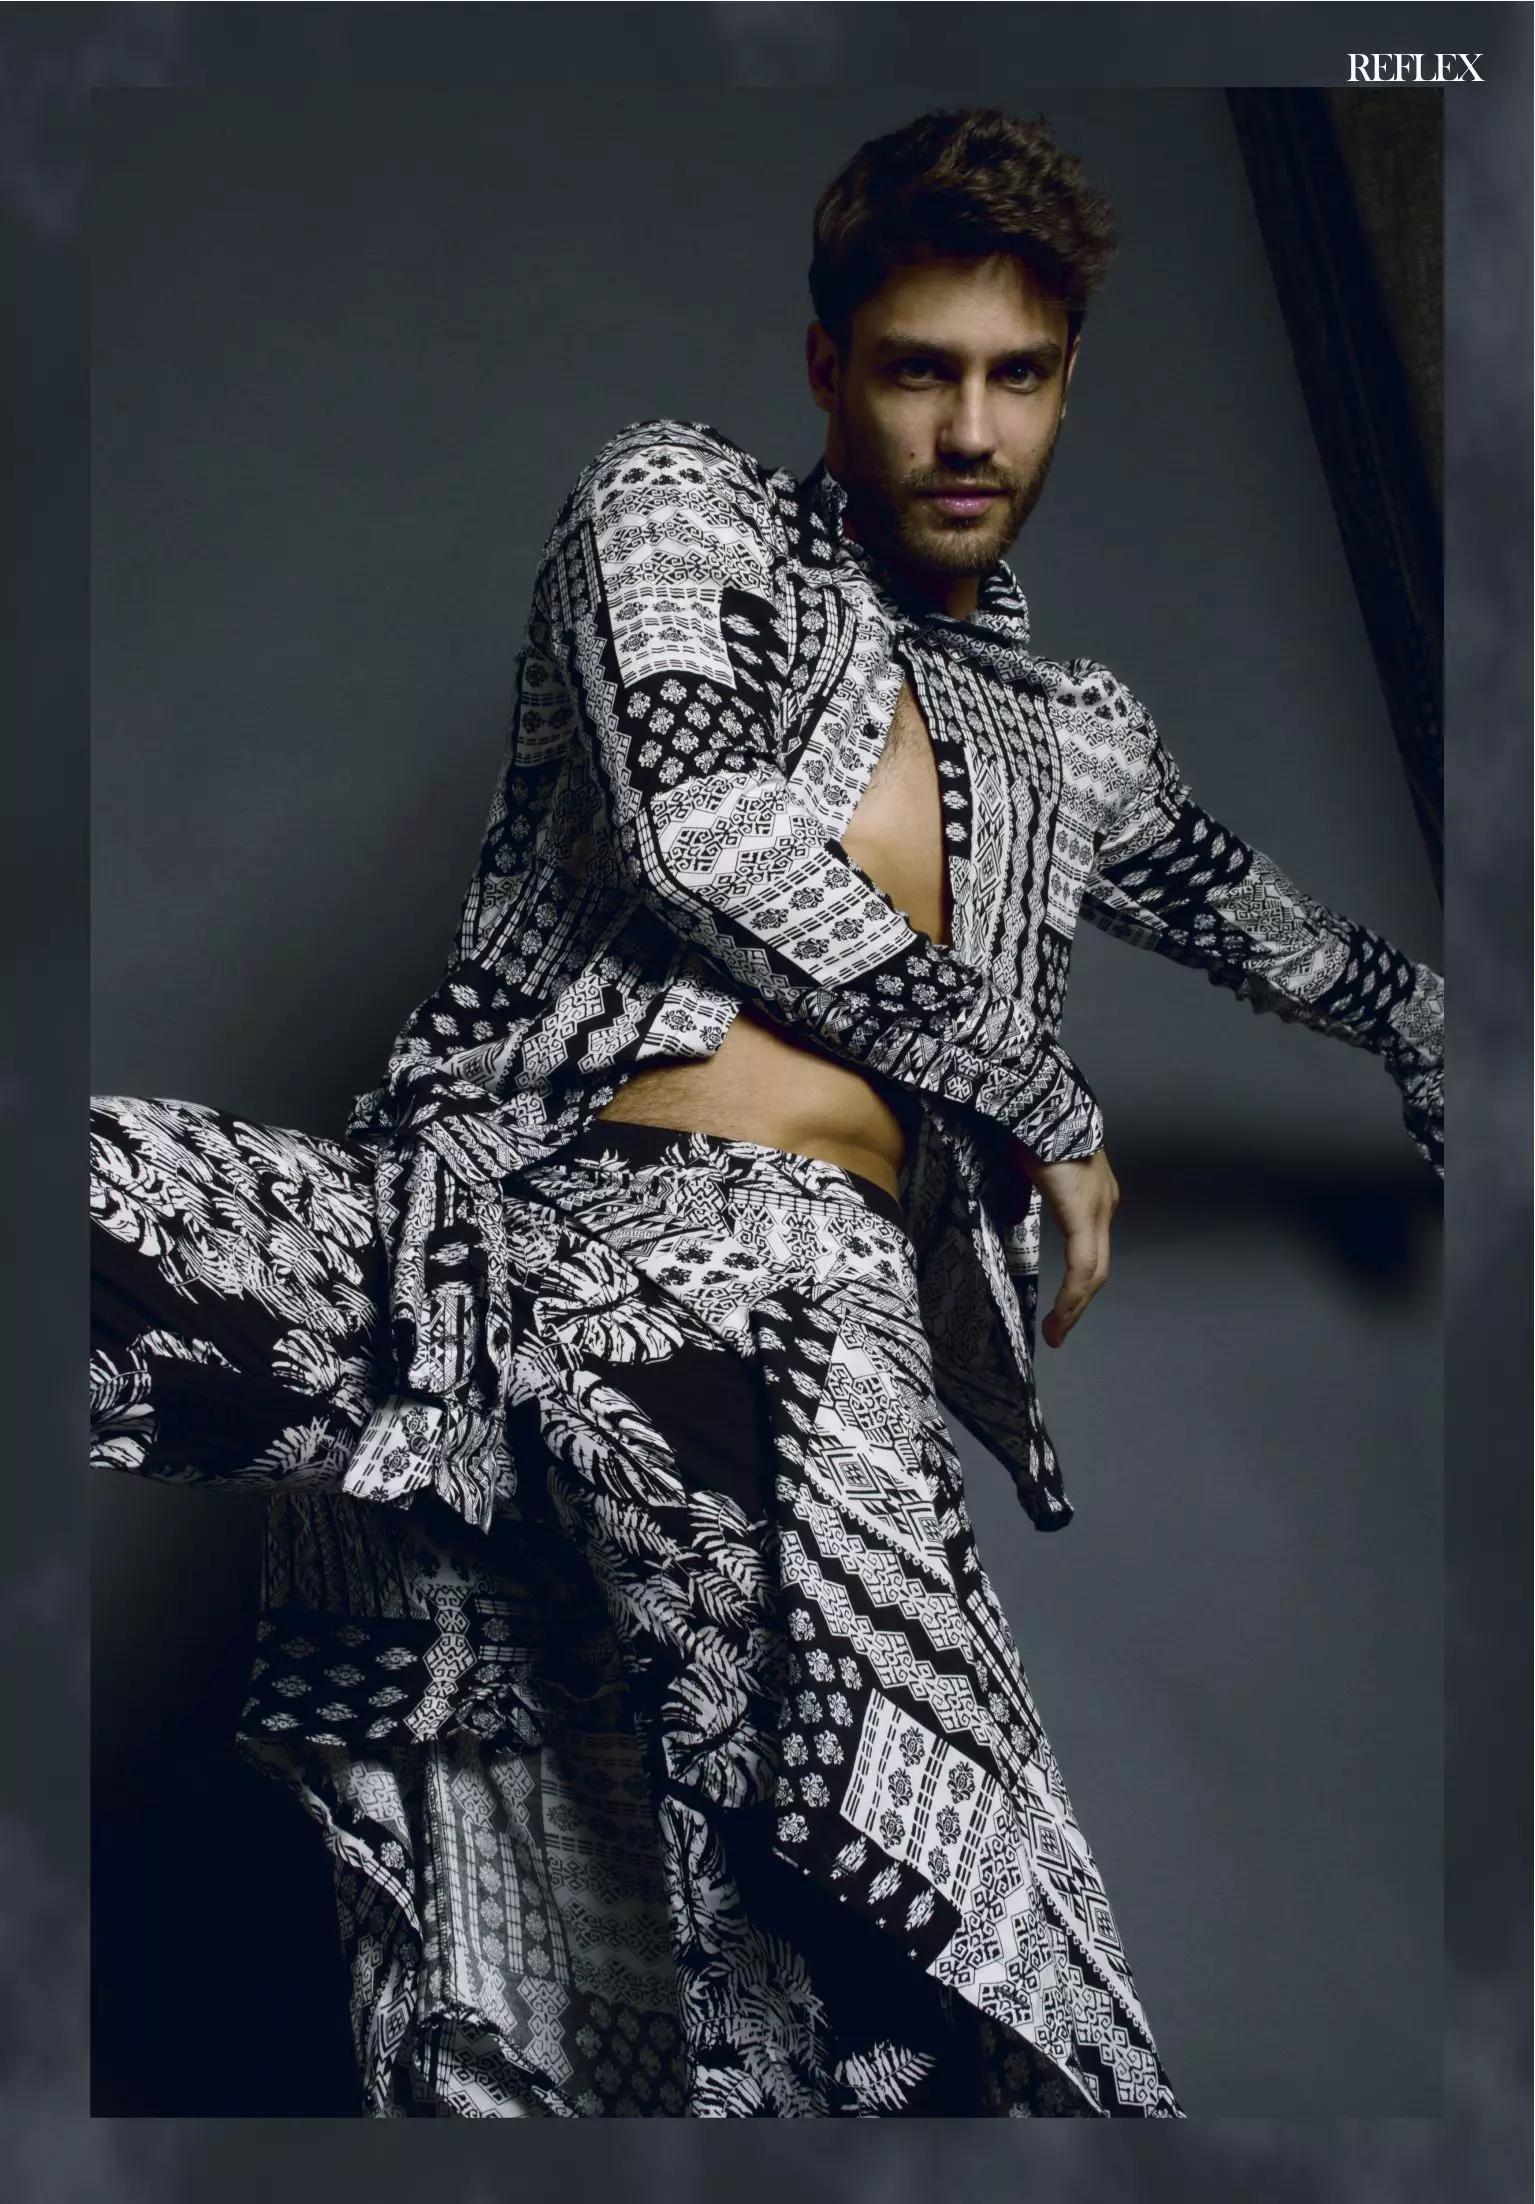 Жүжигчин, загвар өмсөгч Хуан Гуилера EP Bookers-т Reflex Homme-ийн 2015 оны 4-р сарын хэвлэлд зориулсан онцгой зураг авалтад оролцож байна. Ари Мендесийн зургийг Махатма Д.